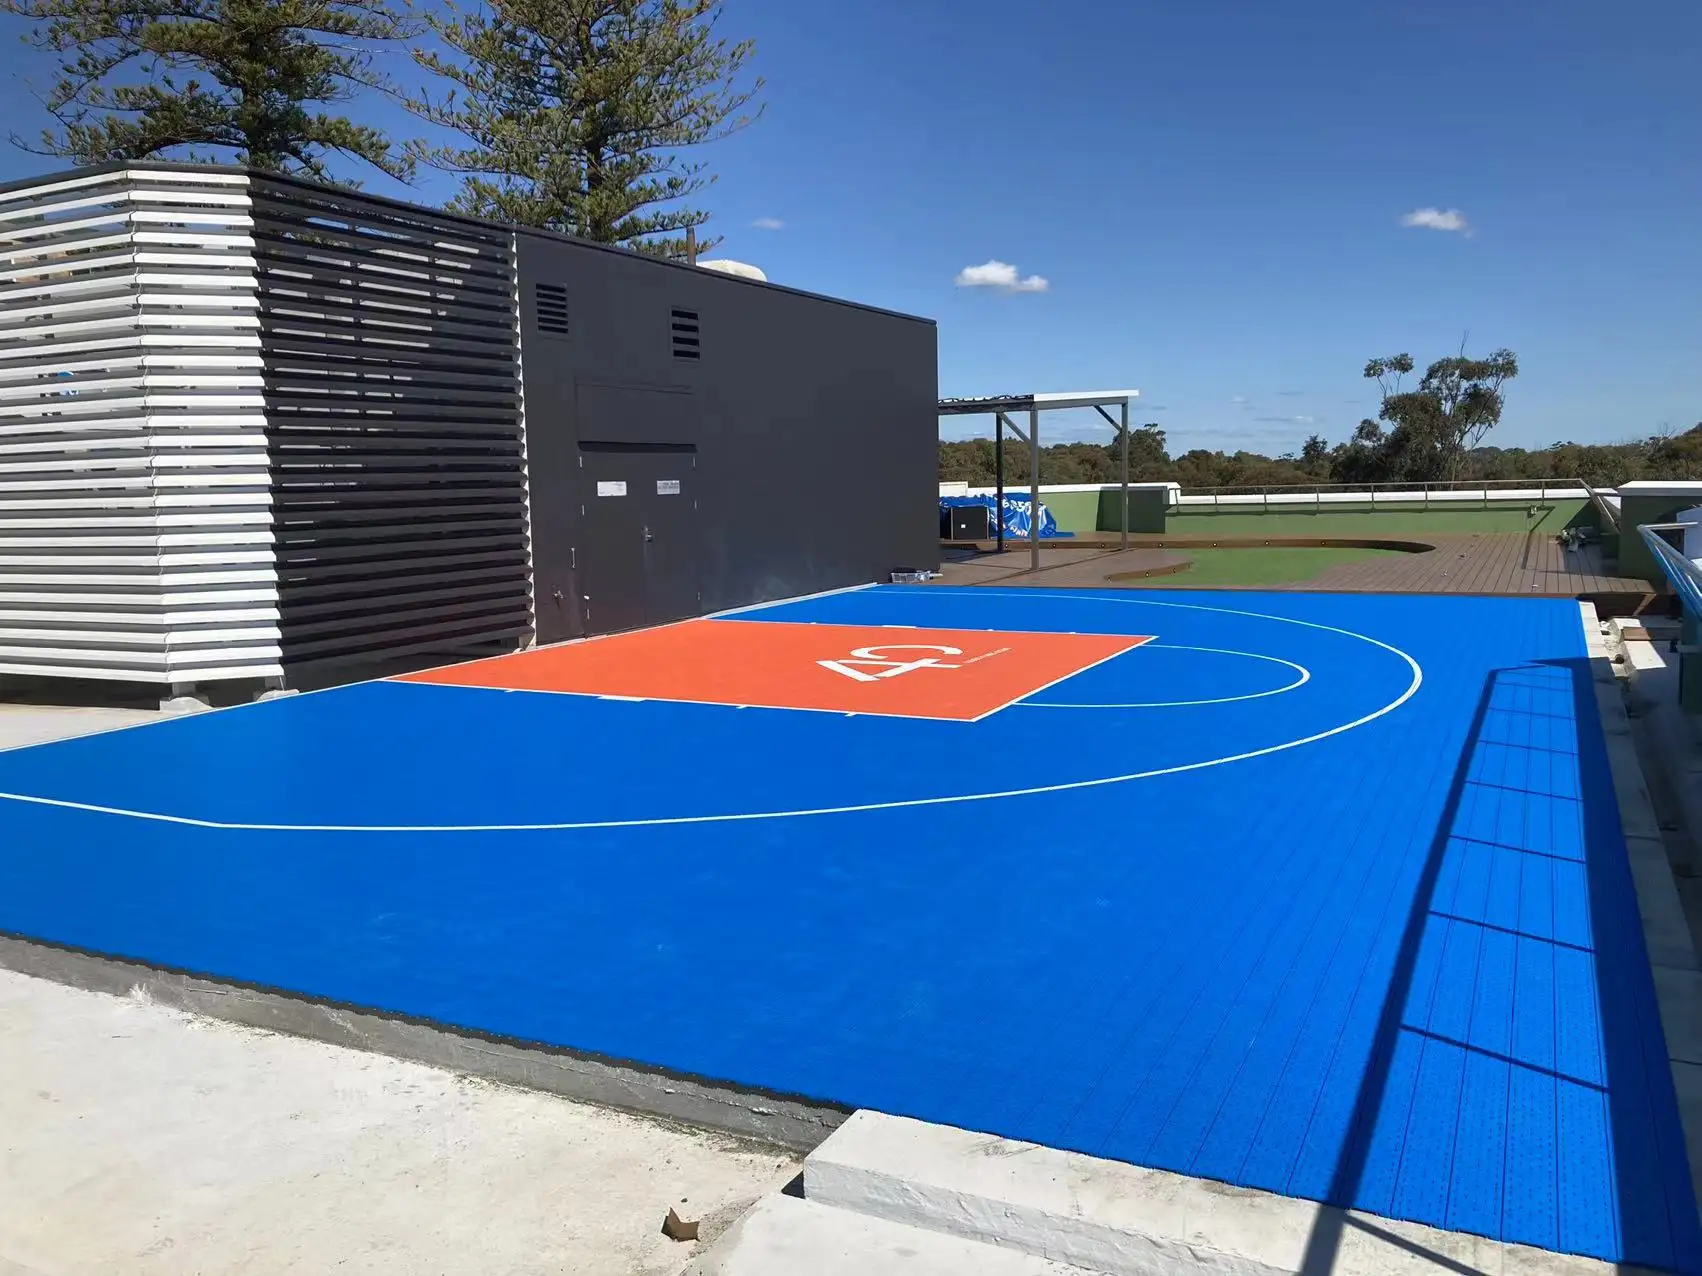 أرضيات إنليو الرياضية لرياضة تنس وكرة السلة ولعب كرة الطائرة بلاطات متشابكة لمنطقة الفناء الخلفية للملاعب الرياضية